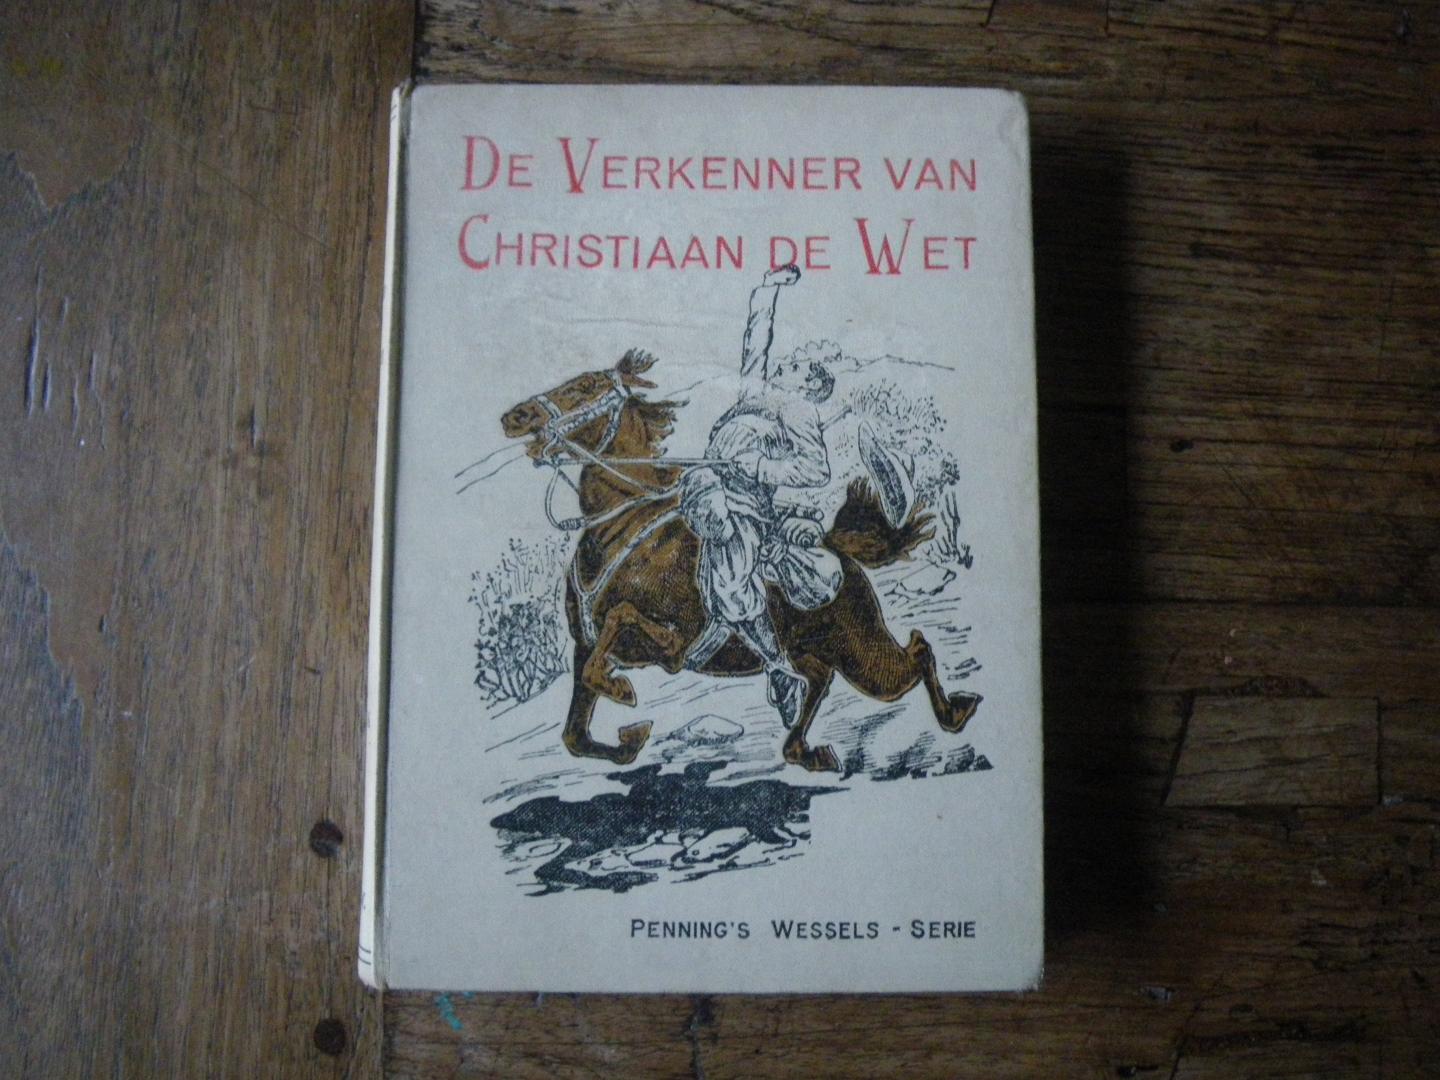 PENNING, L., ill. Koppenol ??. - De Verkenner van Christiaan de Wet. Verhaal uit den Boeren-Oorlog (1899-1902).